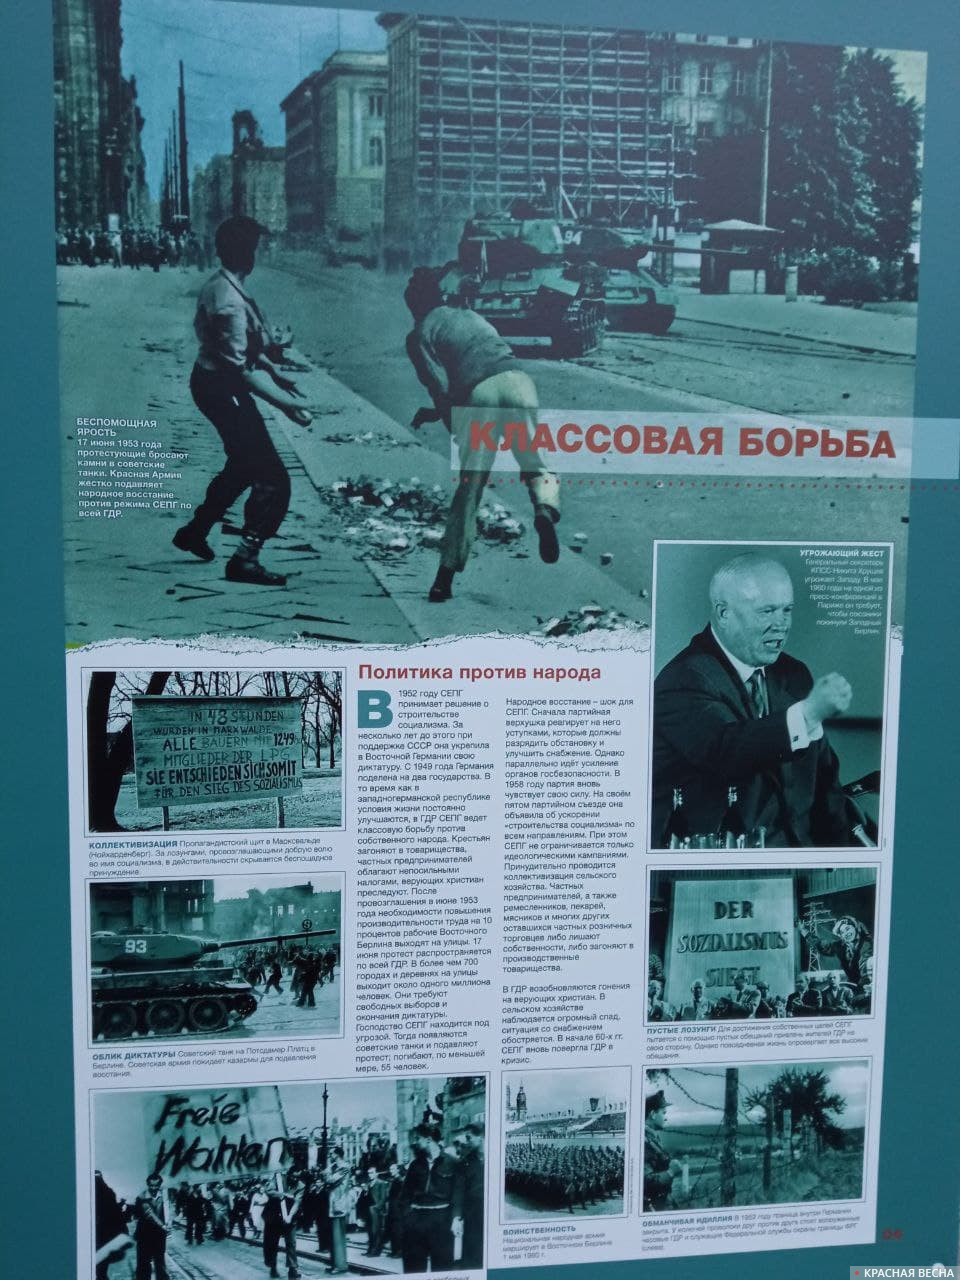 Выставка, посвященная падению Берлинской стены, в Новосибирске